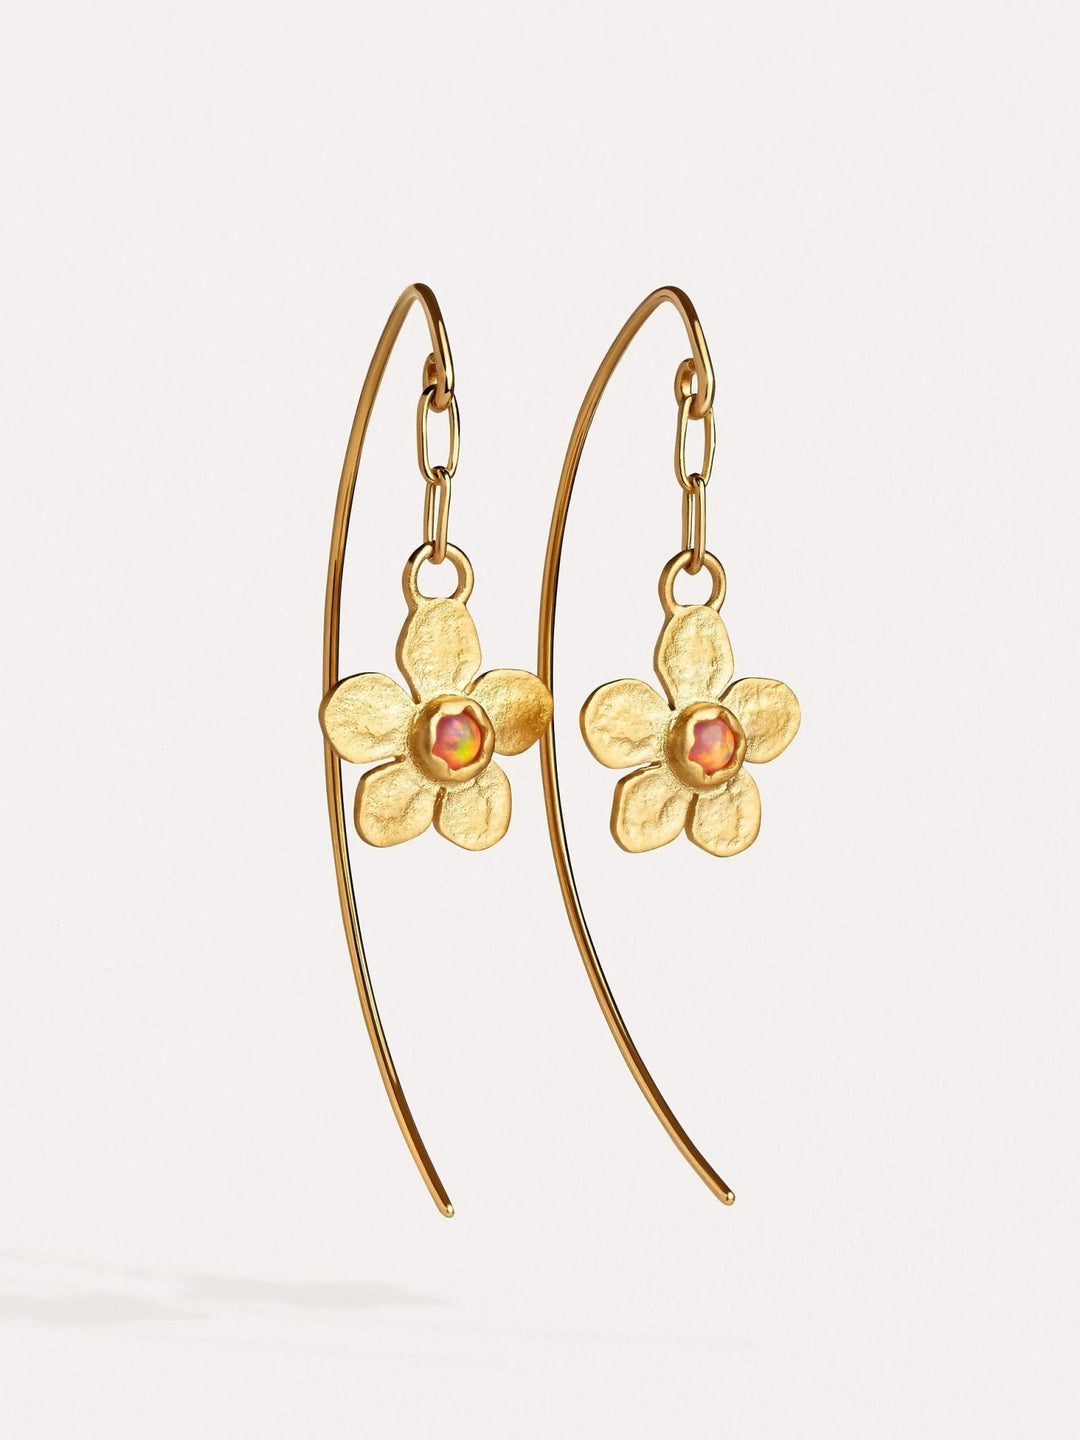 Tracey Dangle Earrings with Flower Charm - Emerald24k Gold Matteboho earringschandelier earringsLunai Jewelry